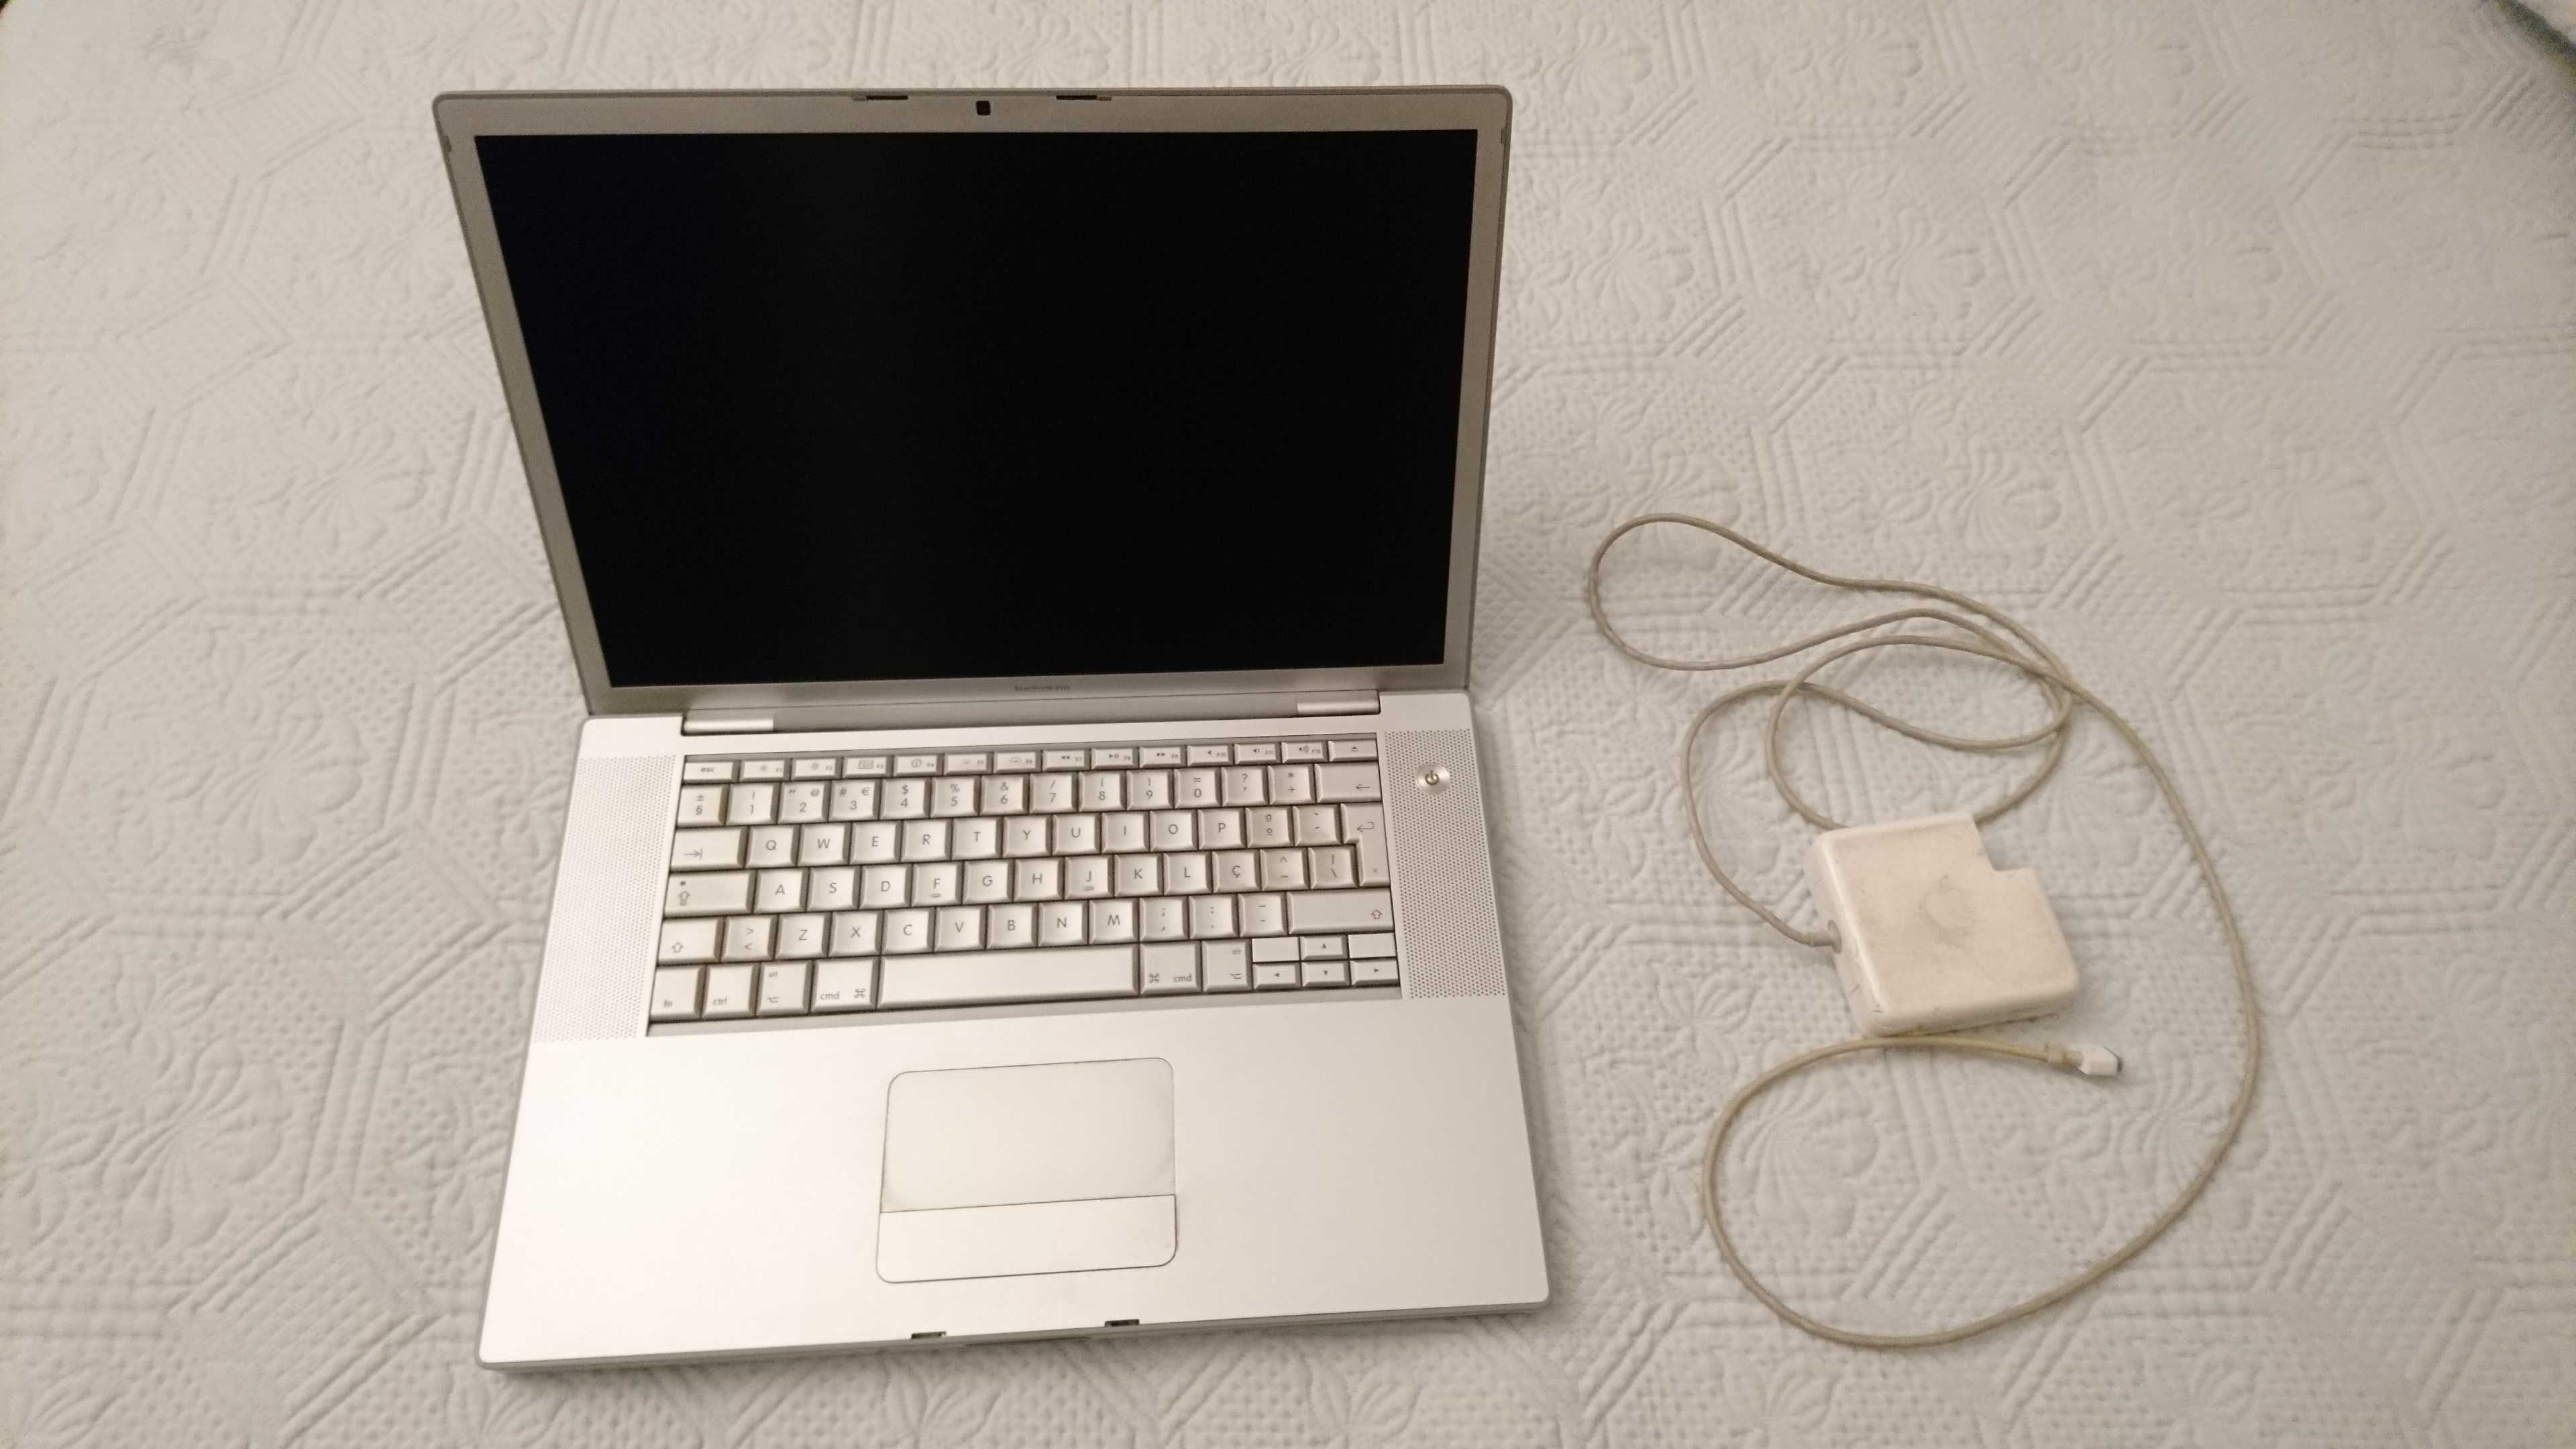 MacBook Pro 15" 2.4Ghz Intel Core 2 Duo - avariado